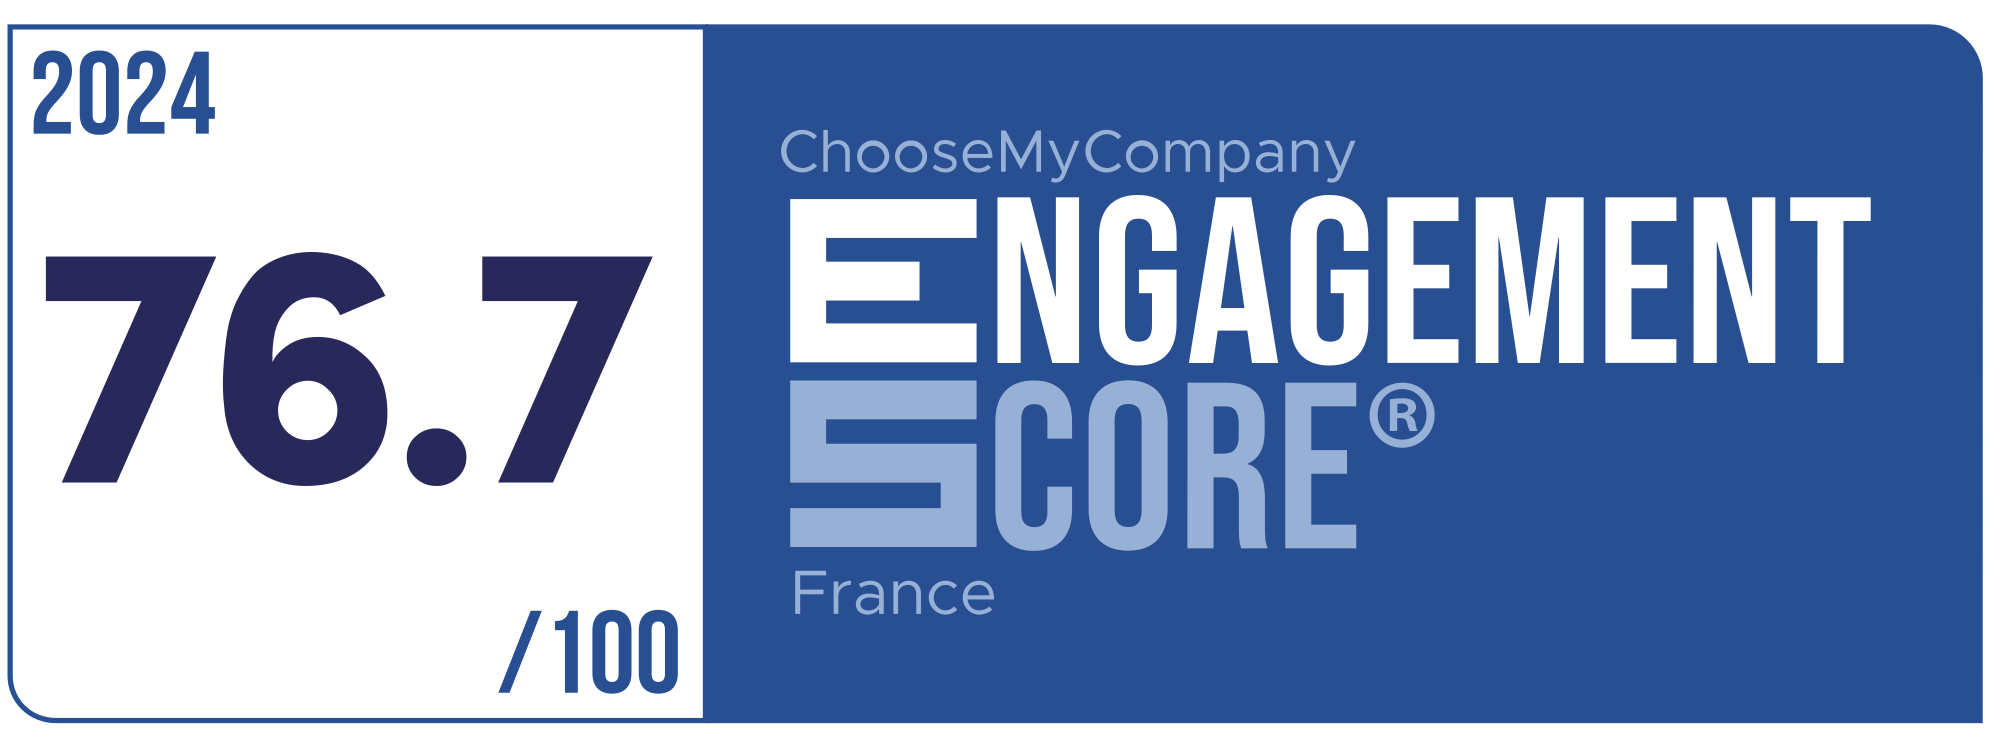 Label Engagement Score 2024 France